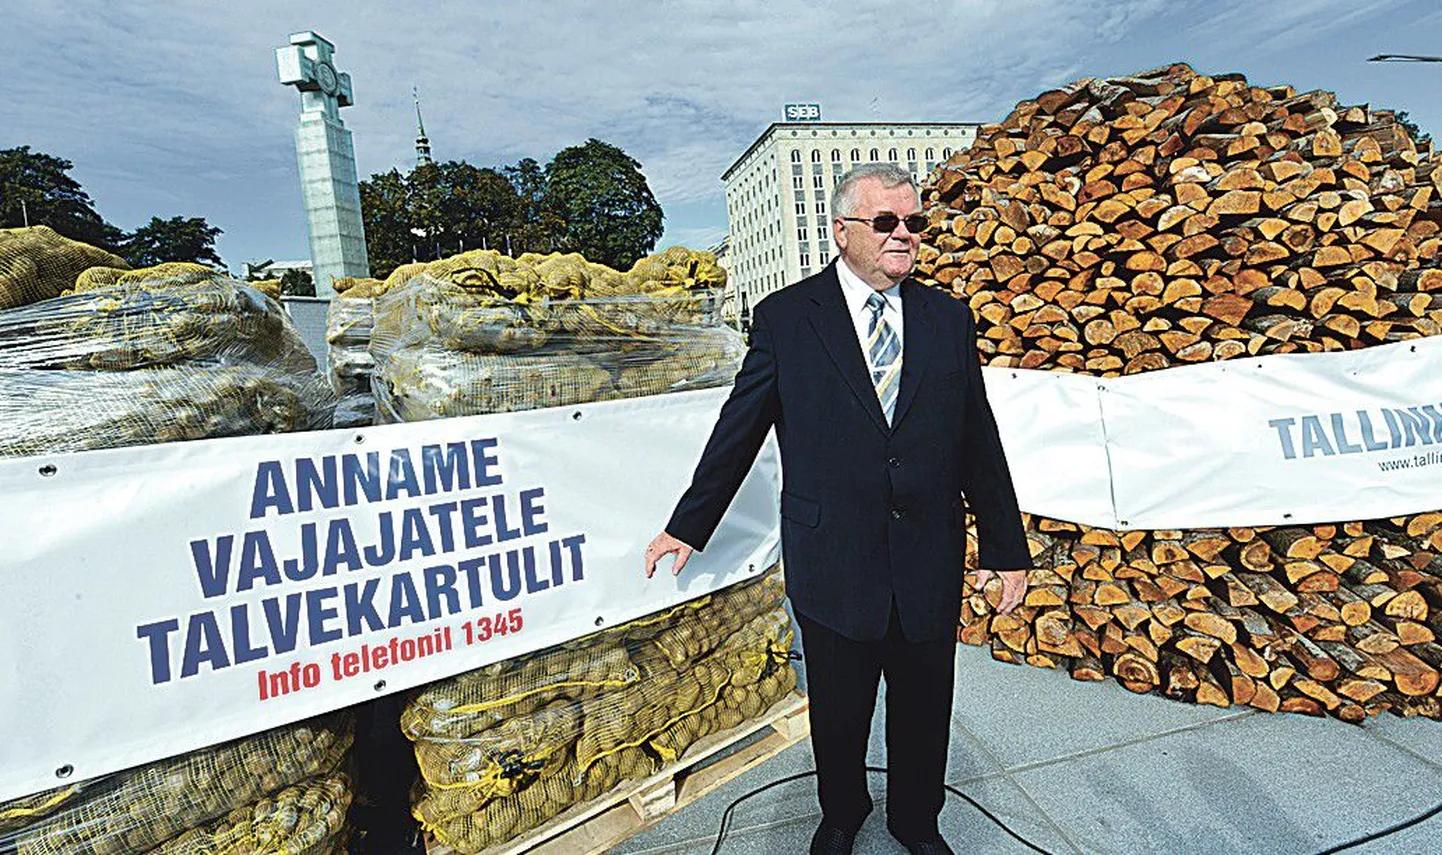 Председатель Центристской партии и мэр Эдгар Сависаар организовал на площади Вабадузе раздачу картофеля и дров.